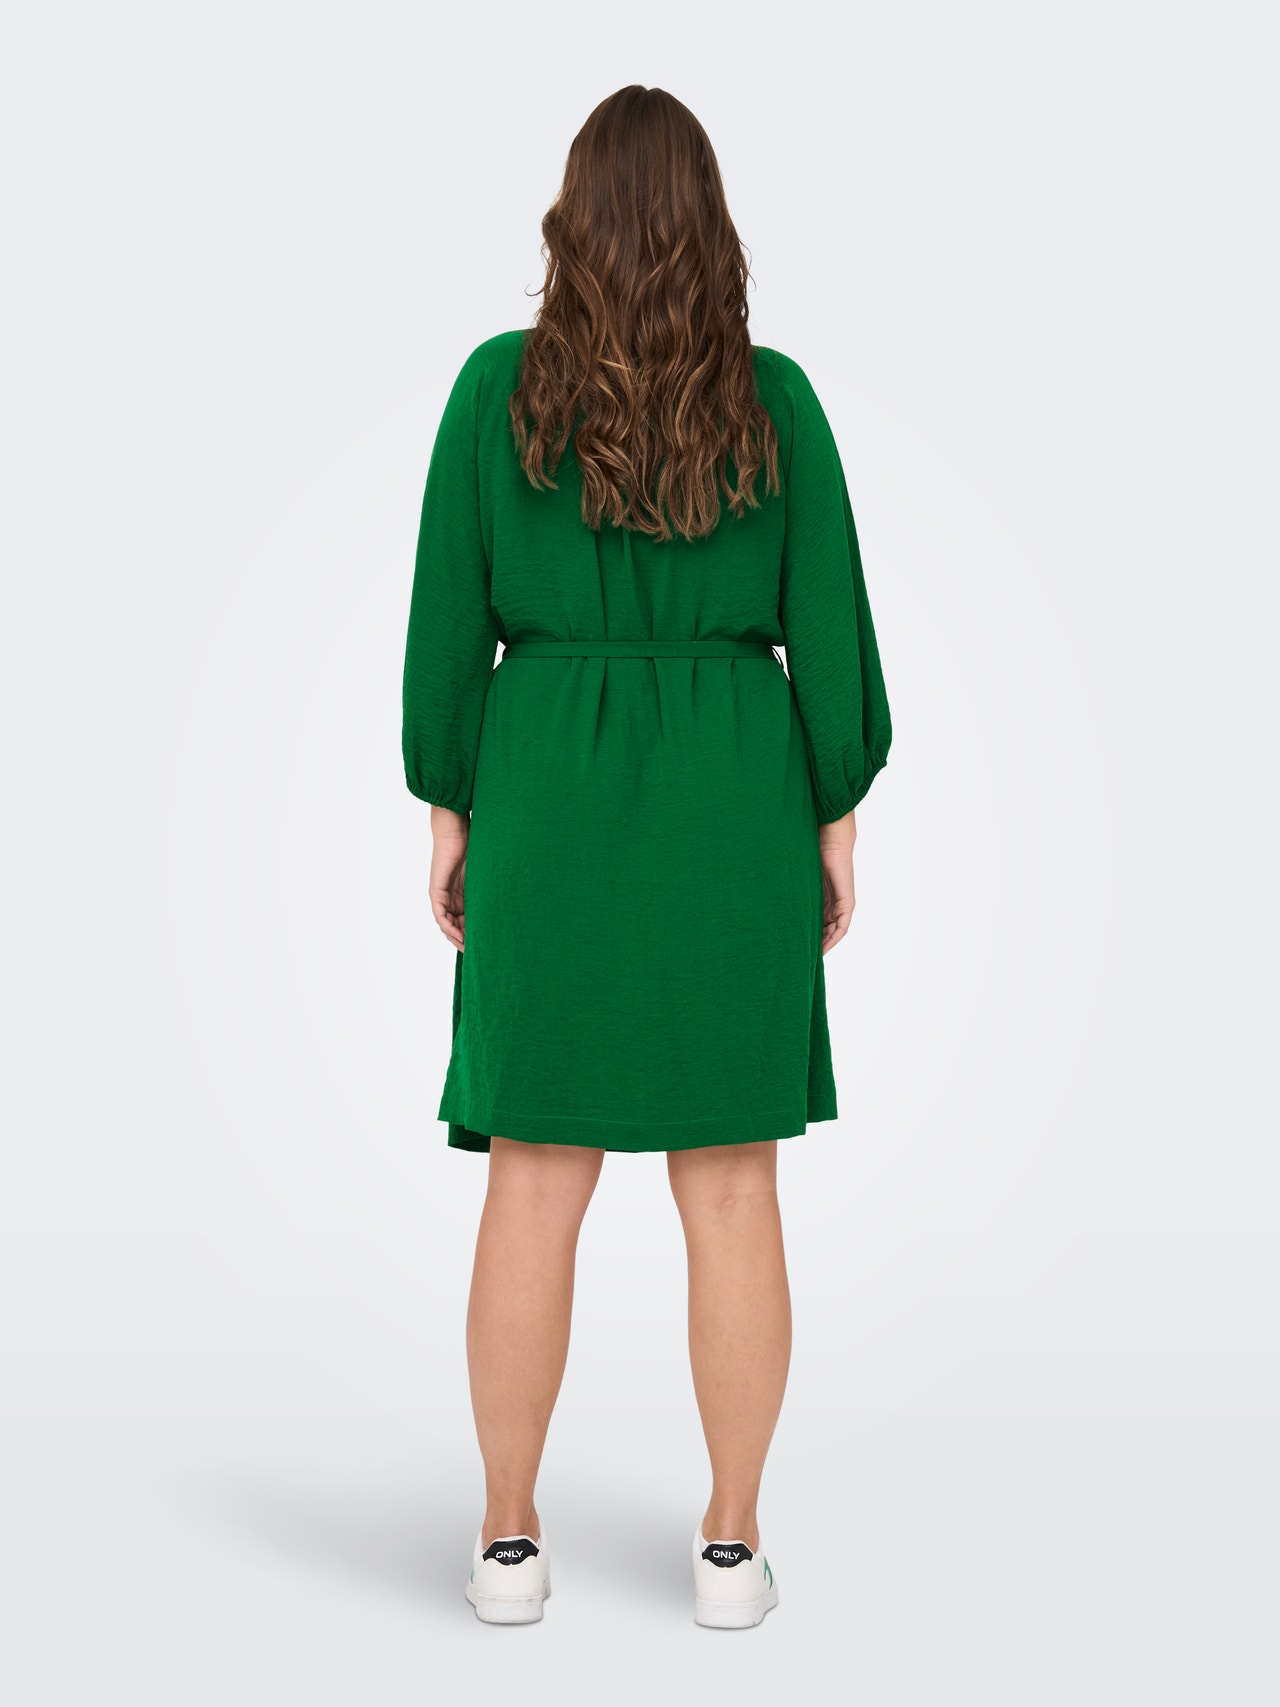 afstand Startpunt Scepticisme Regular fit V-Hals Lange jurk met 30% korting! | ONLY®